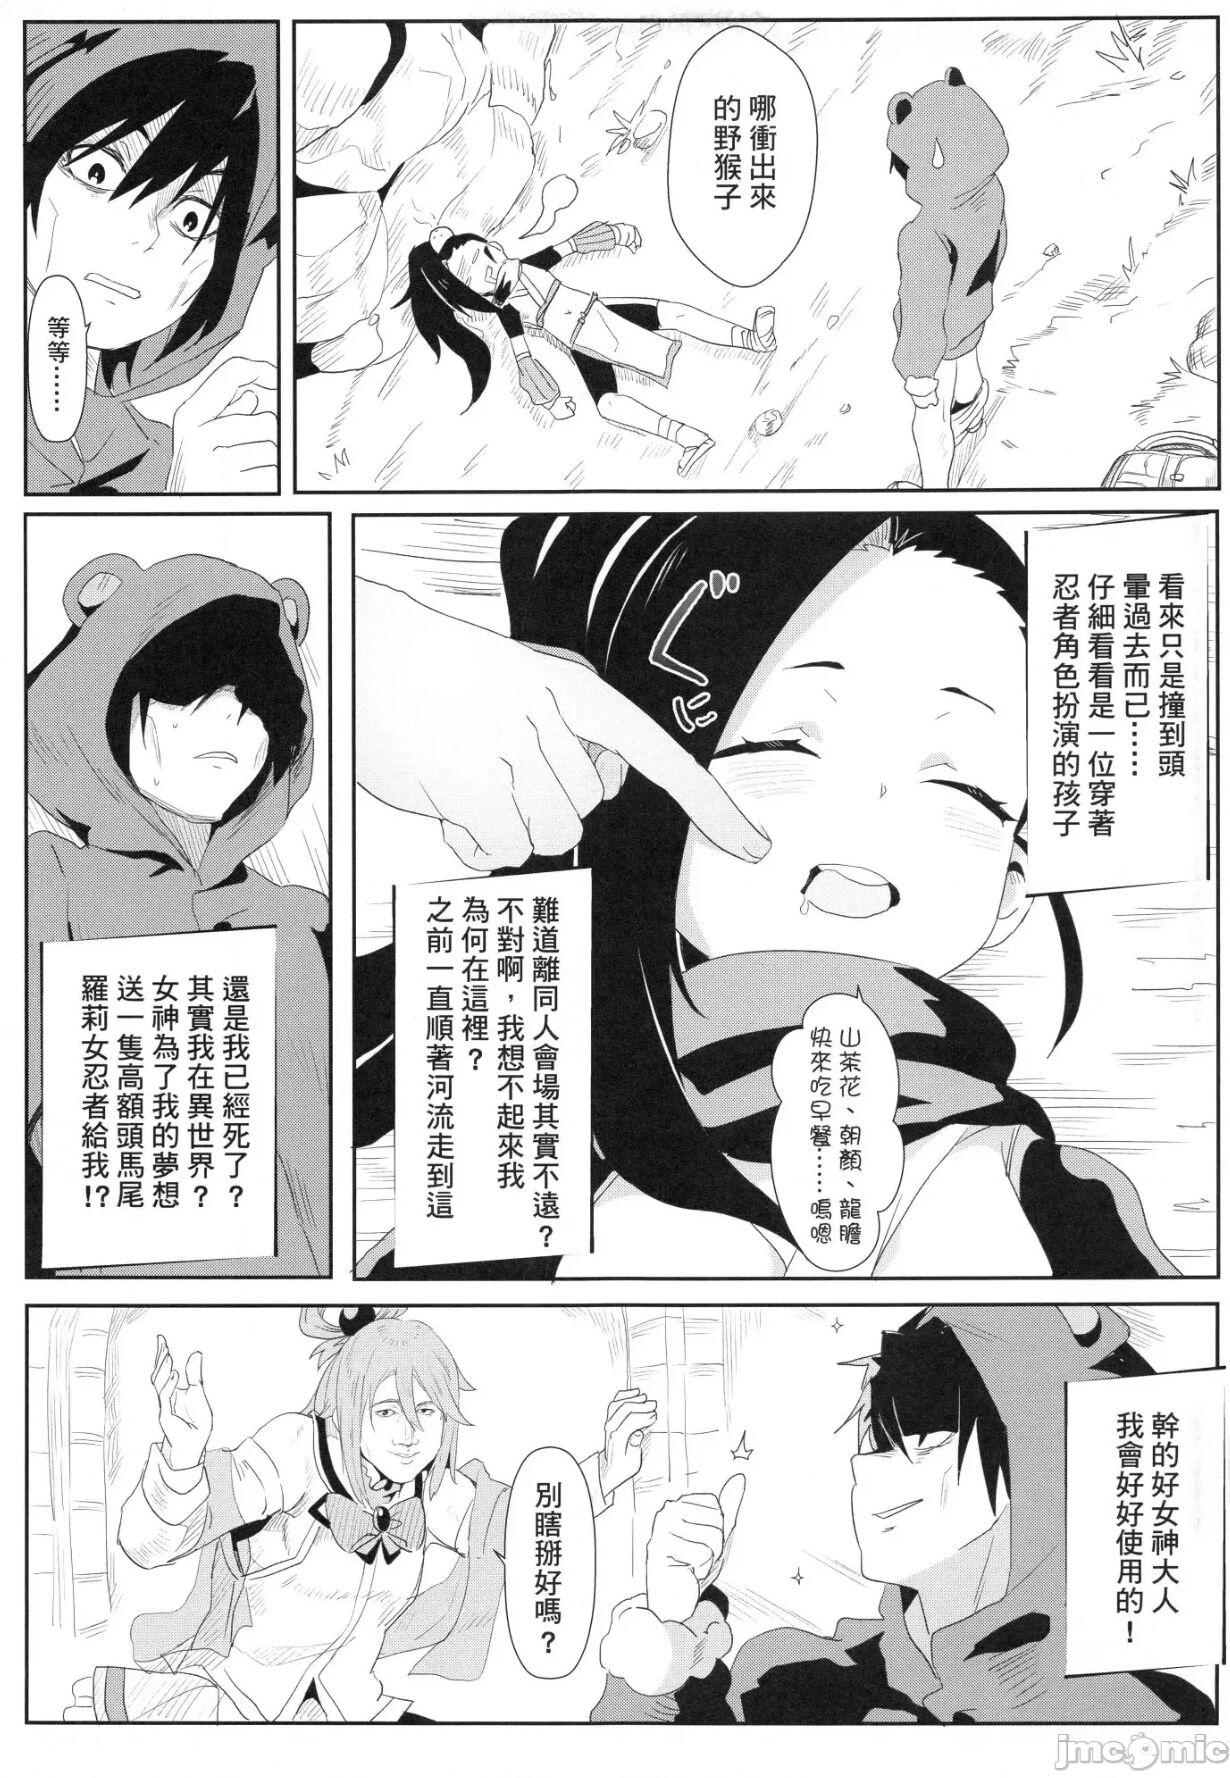 Fake Onna Ninja no Yojinbo - Kunoichi tsubaki no mune no uchi Close Up - Page 8